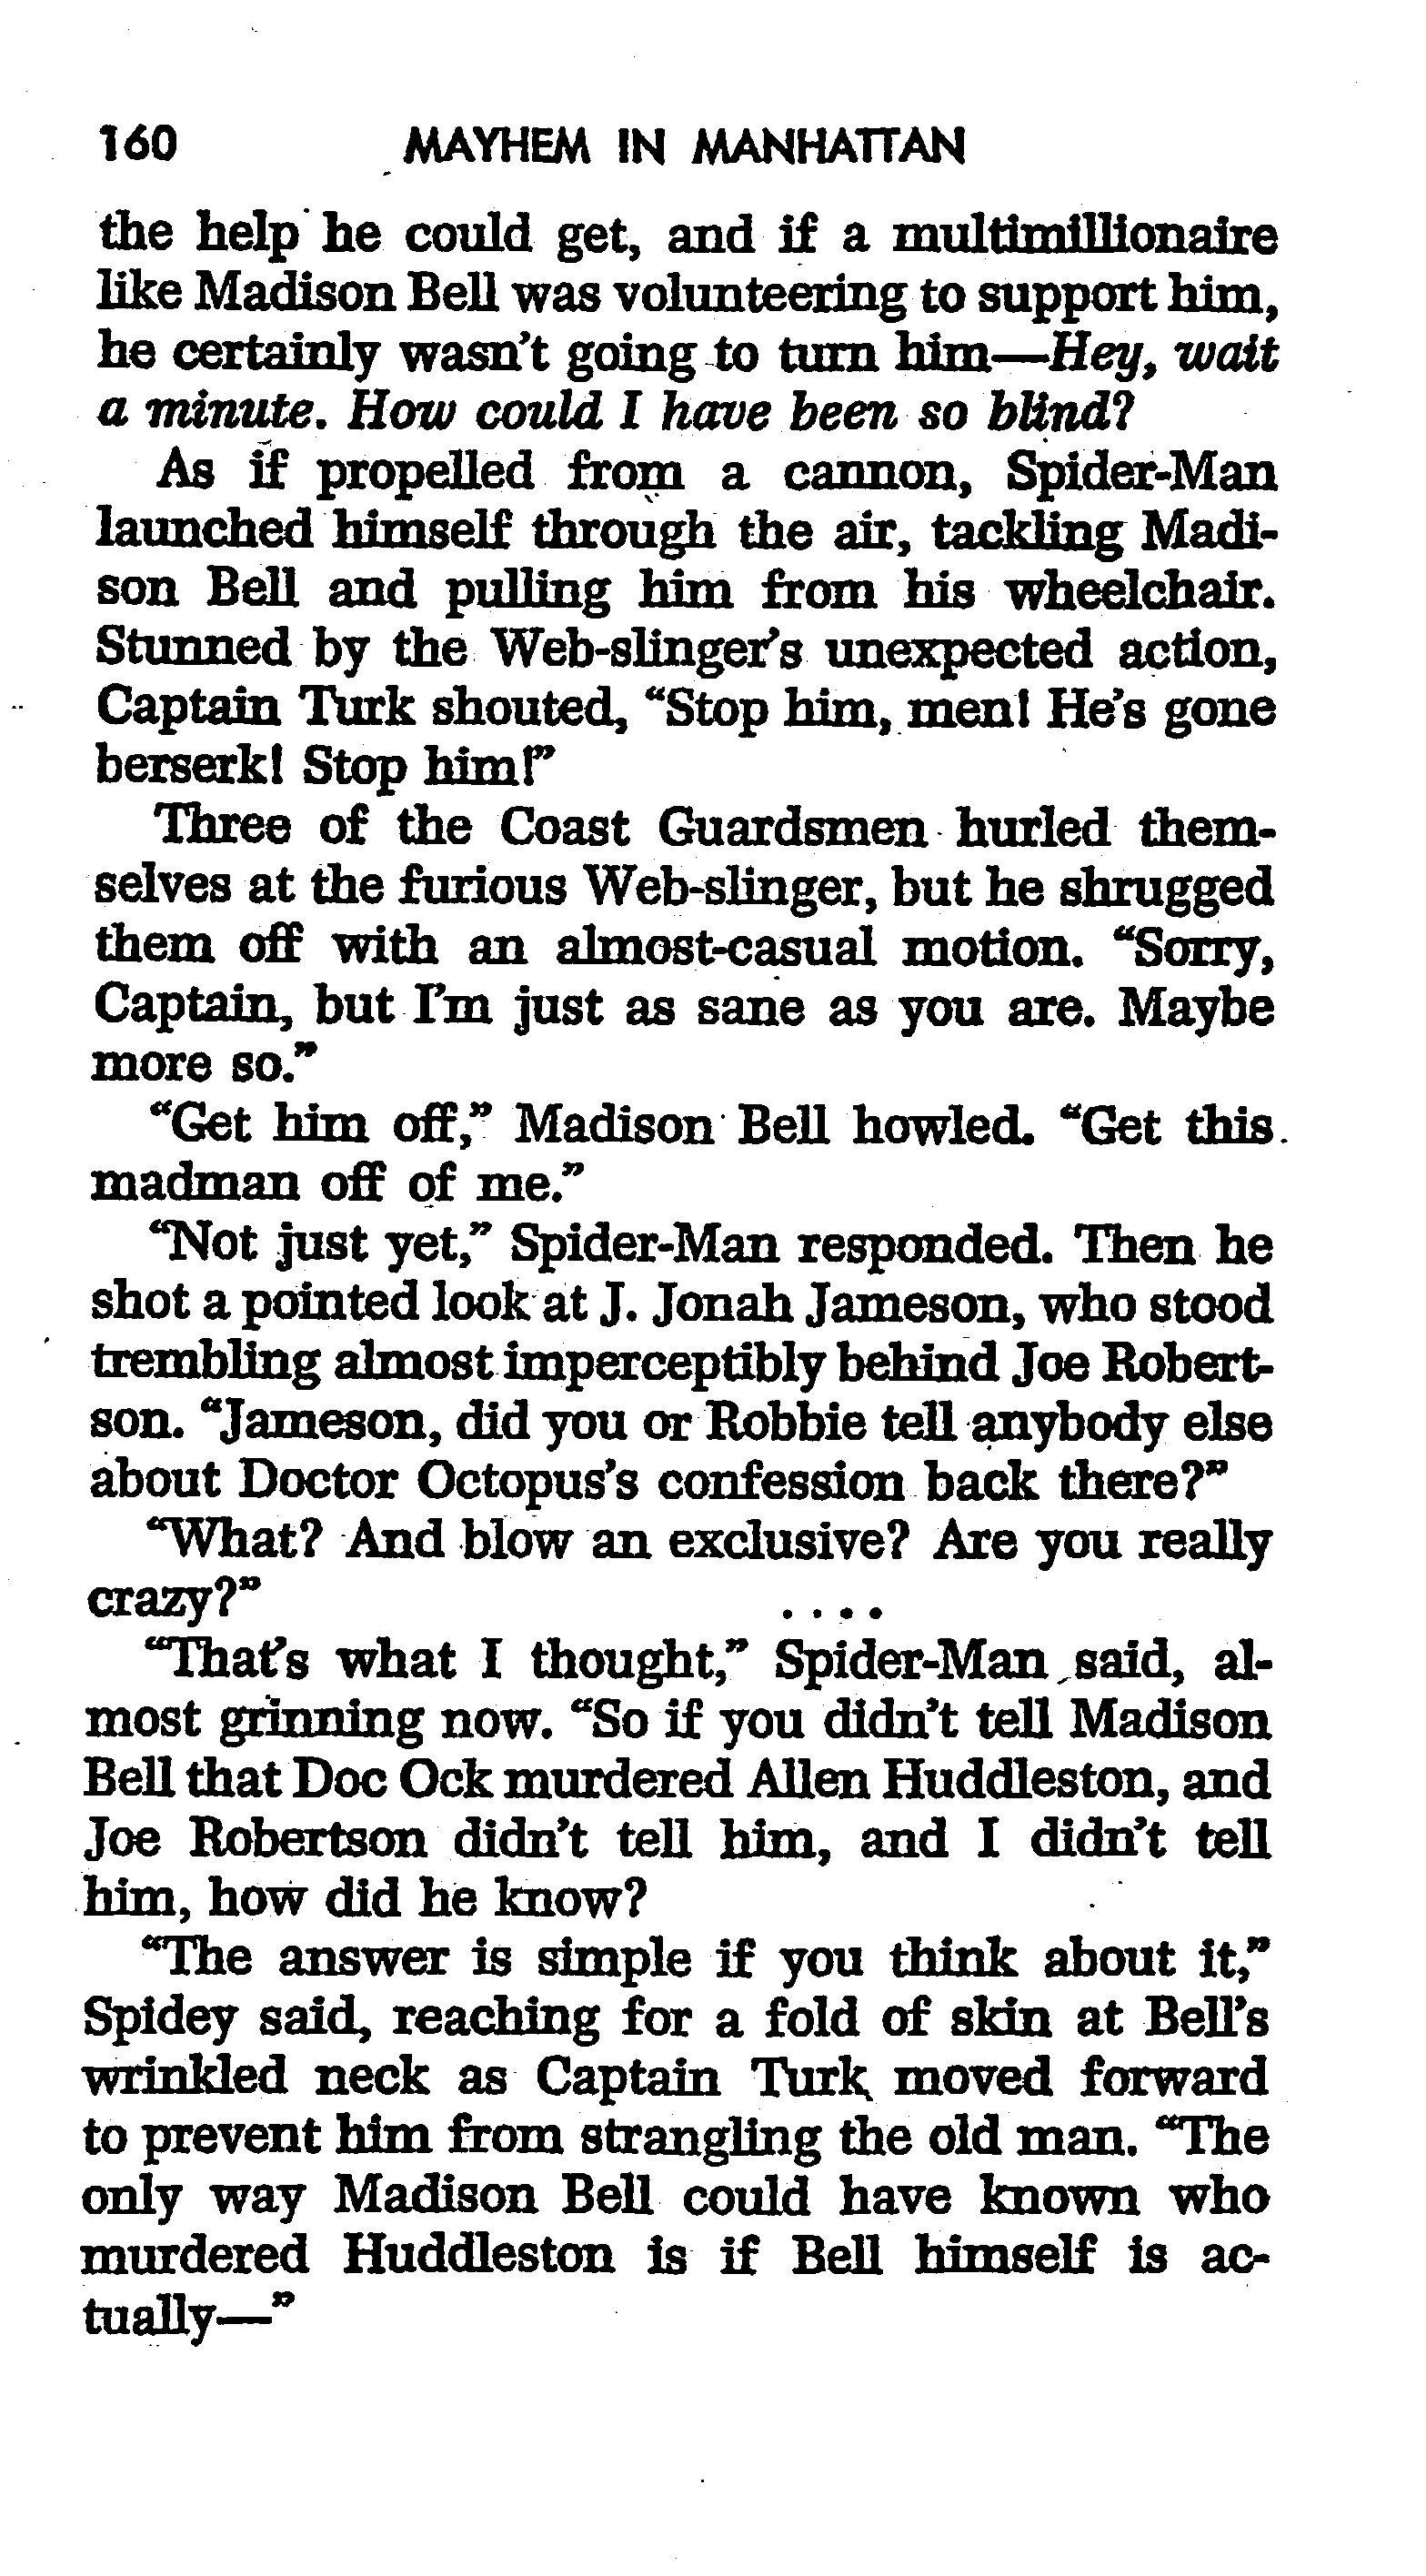 Read online The Amazing Spider-Man: Mayhem in Manhattan comic -  Issue # TPB (Part 2) - 62